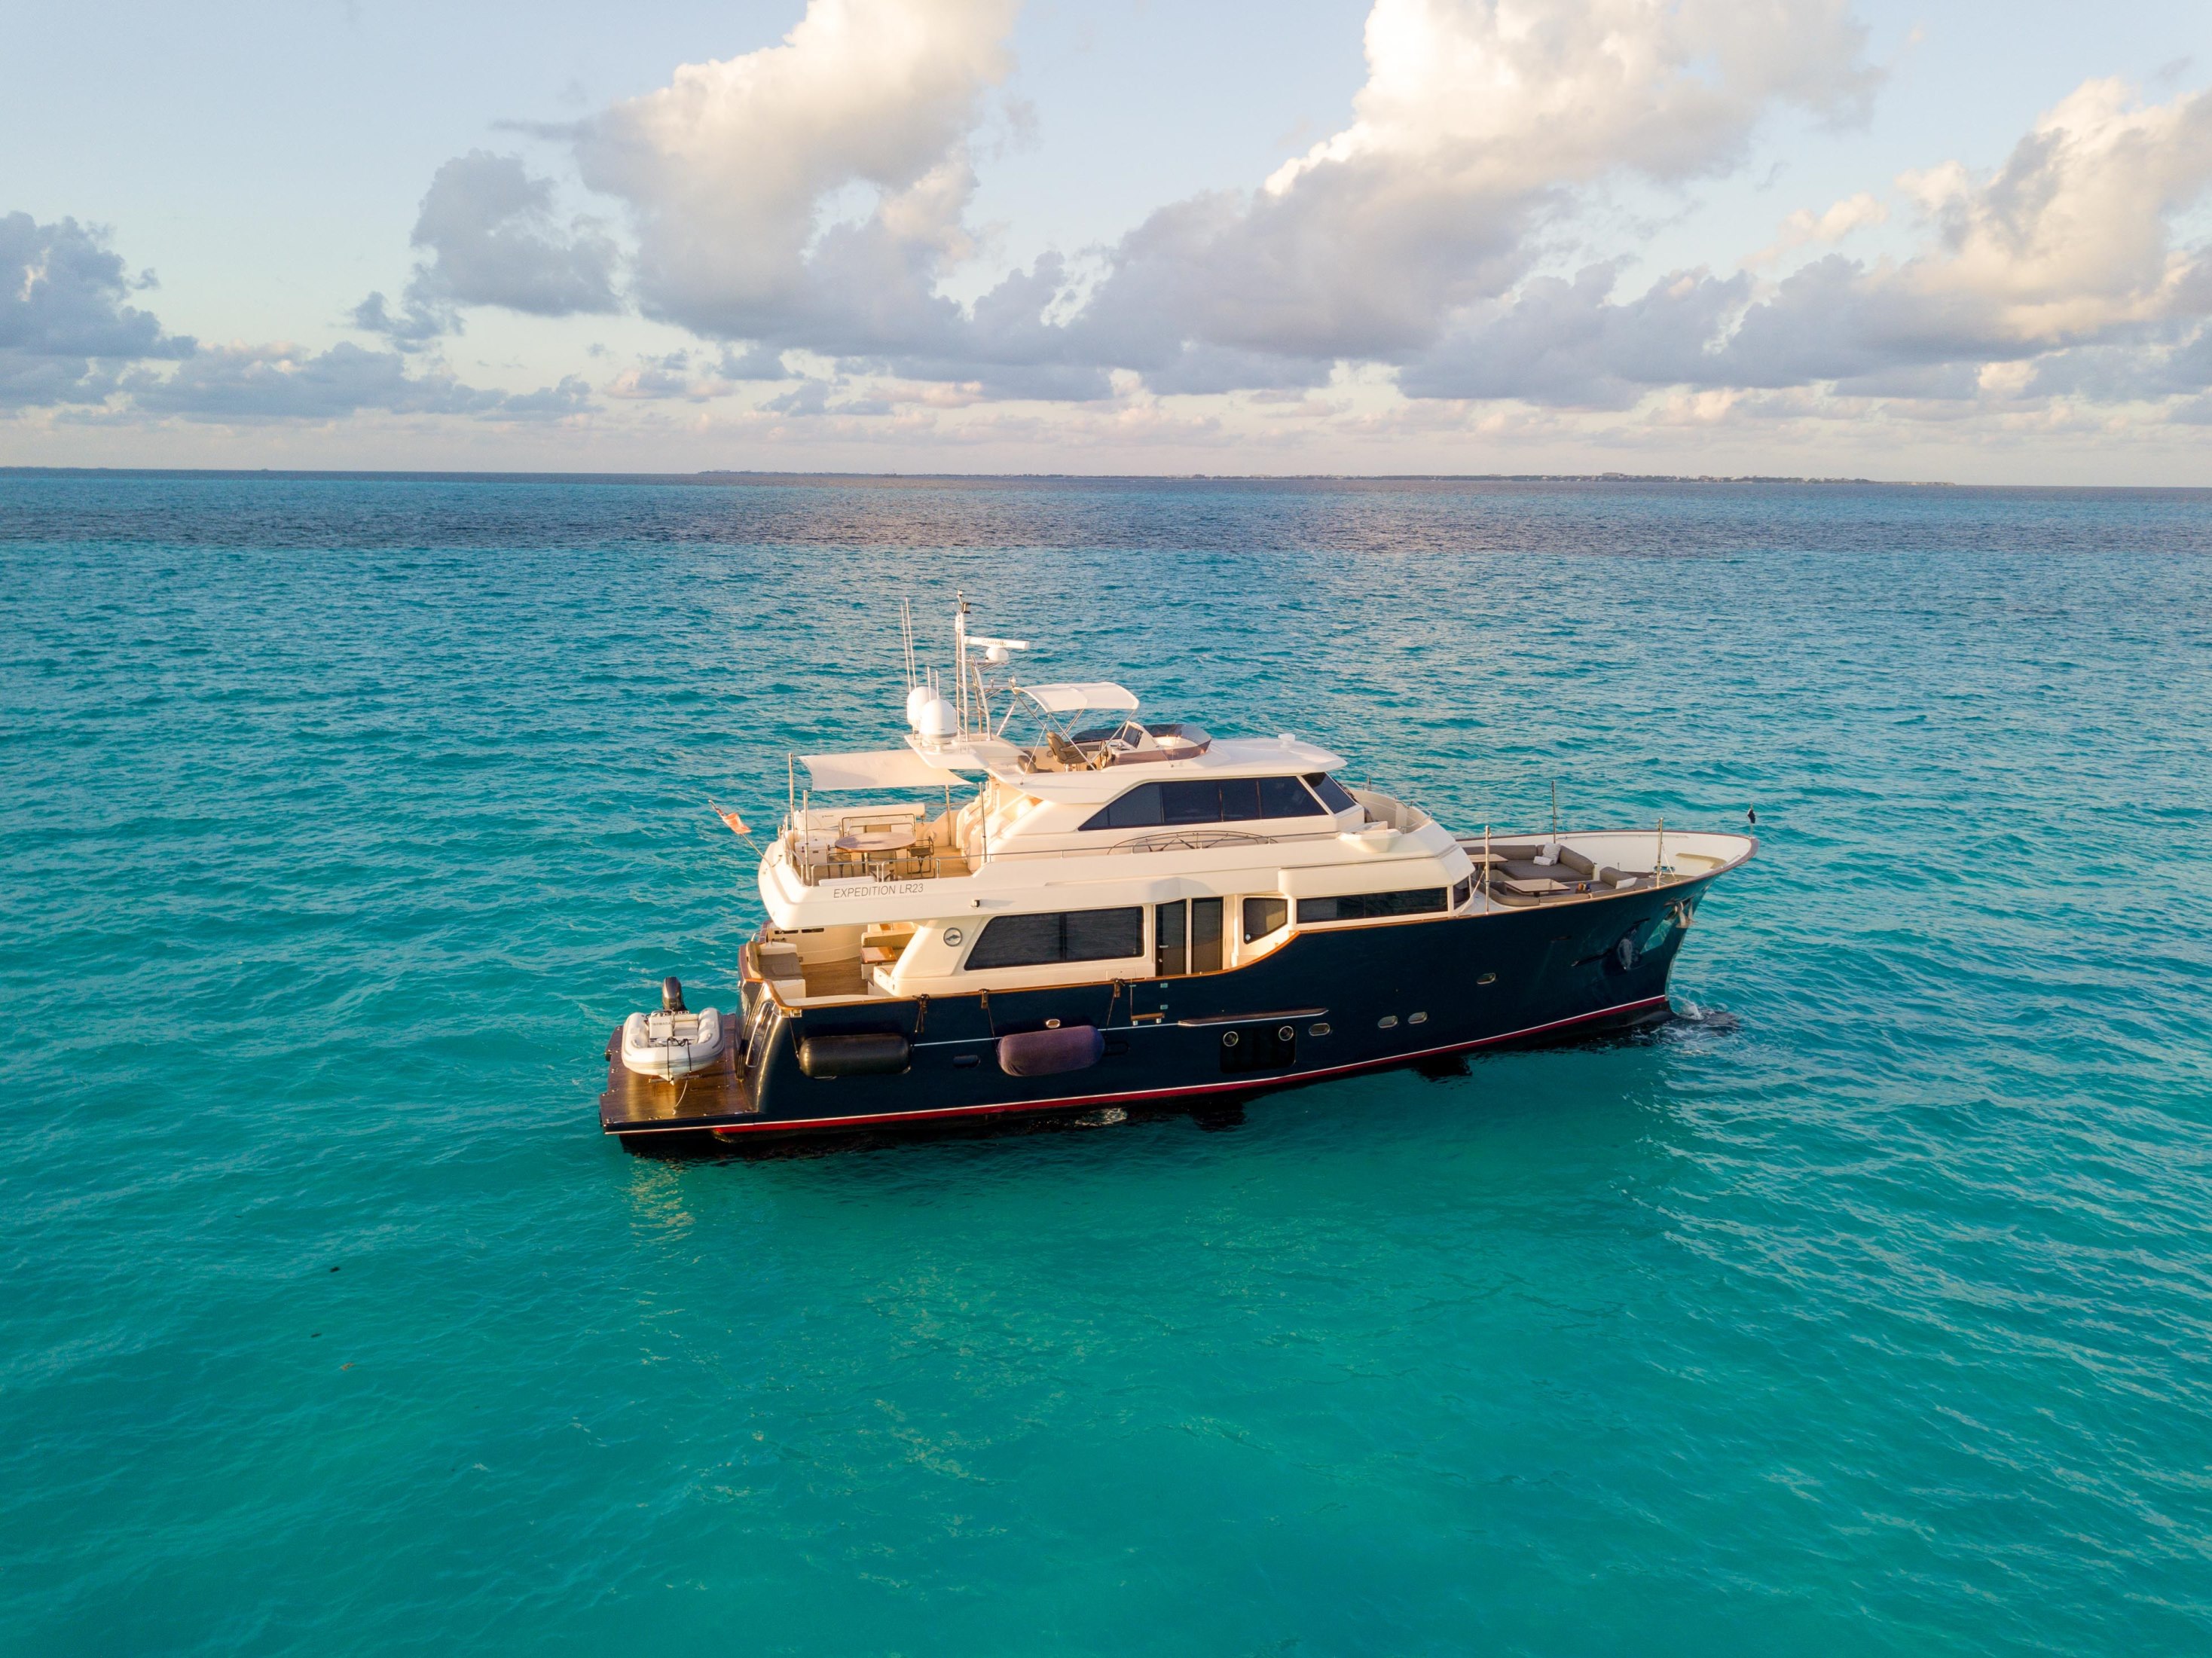 vela nomada yacht charter